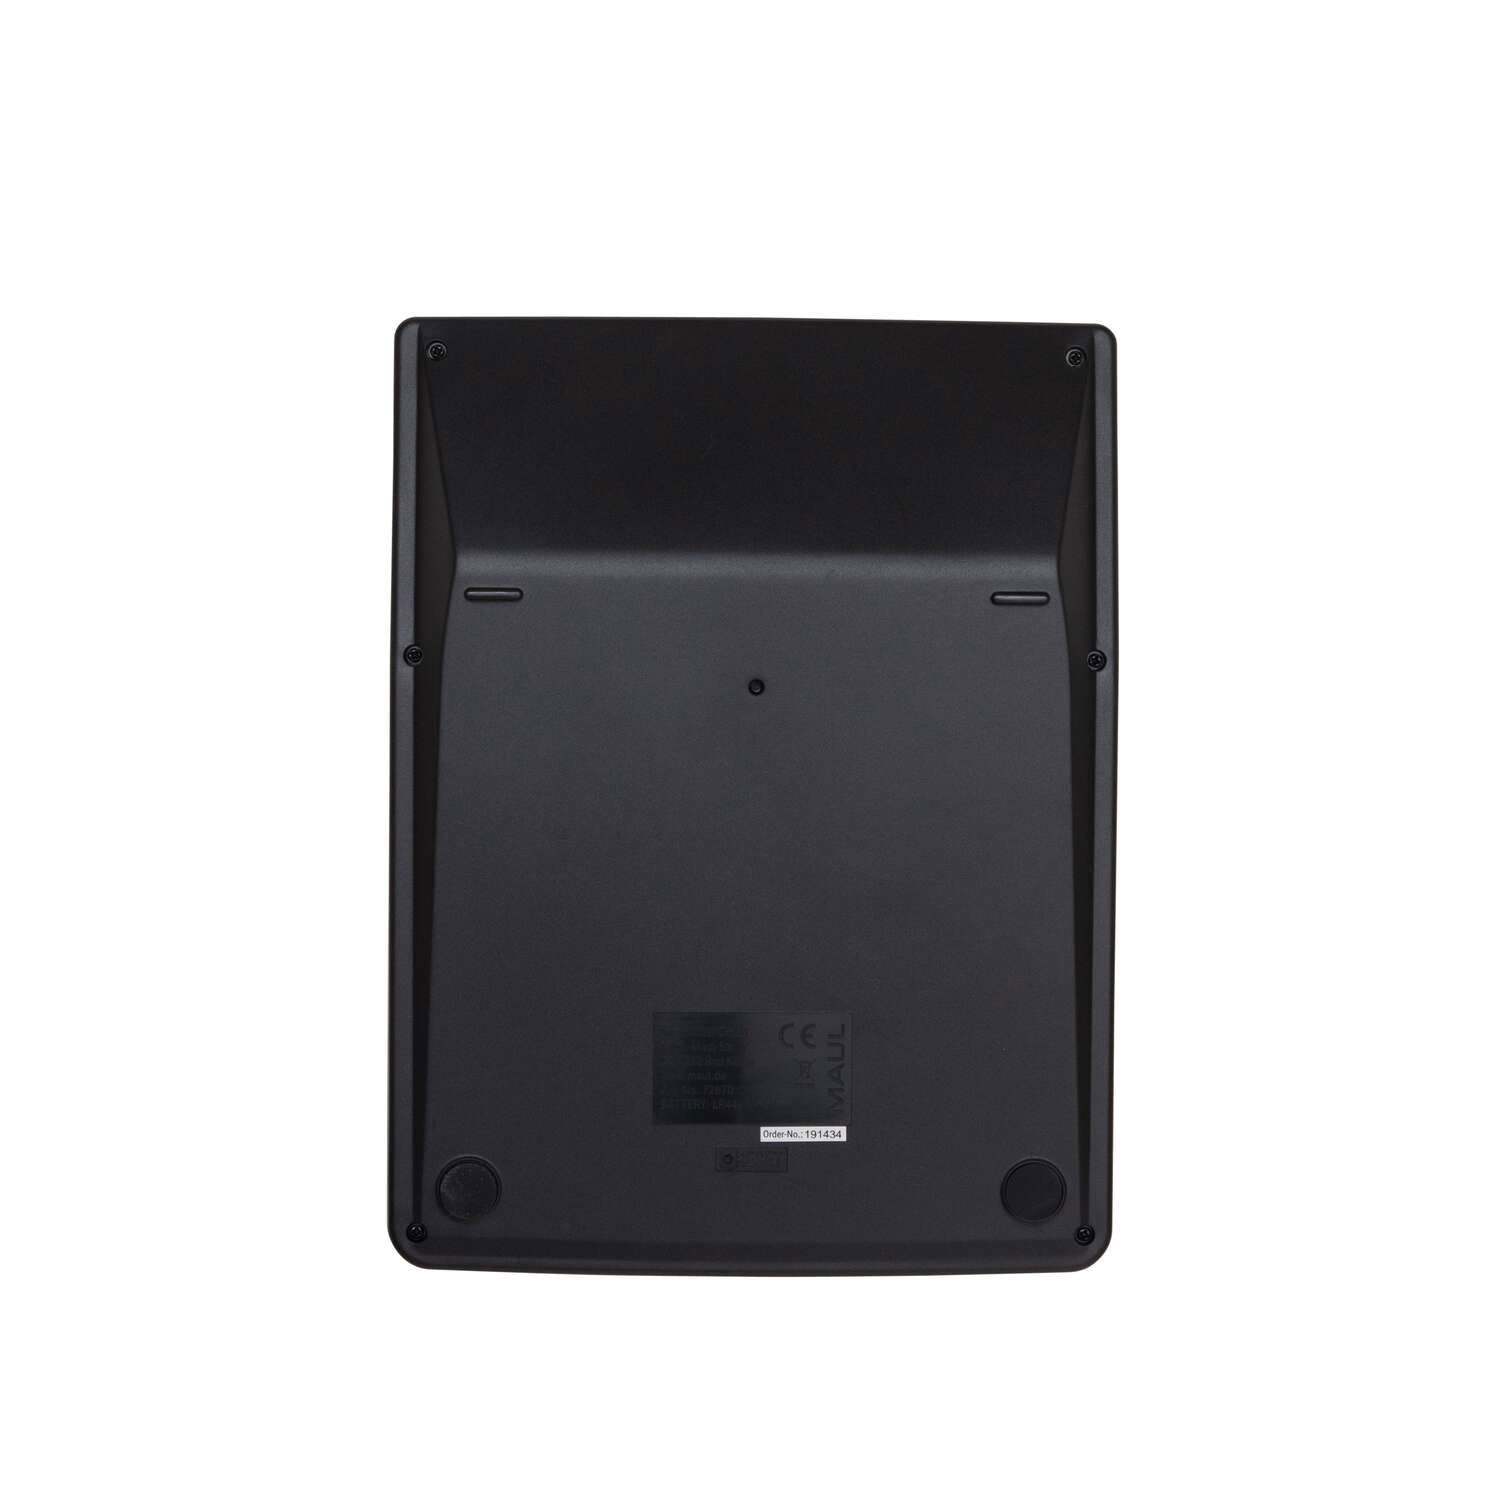 MAUL Tischrechner MXL 14 Solar Batterie 1-zeilig, 14 Ziffern schwarz